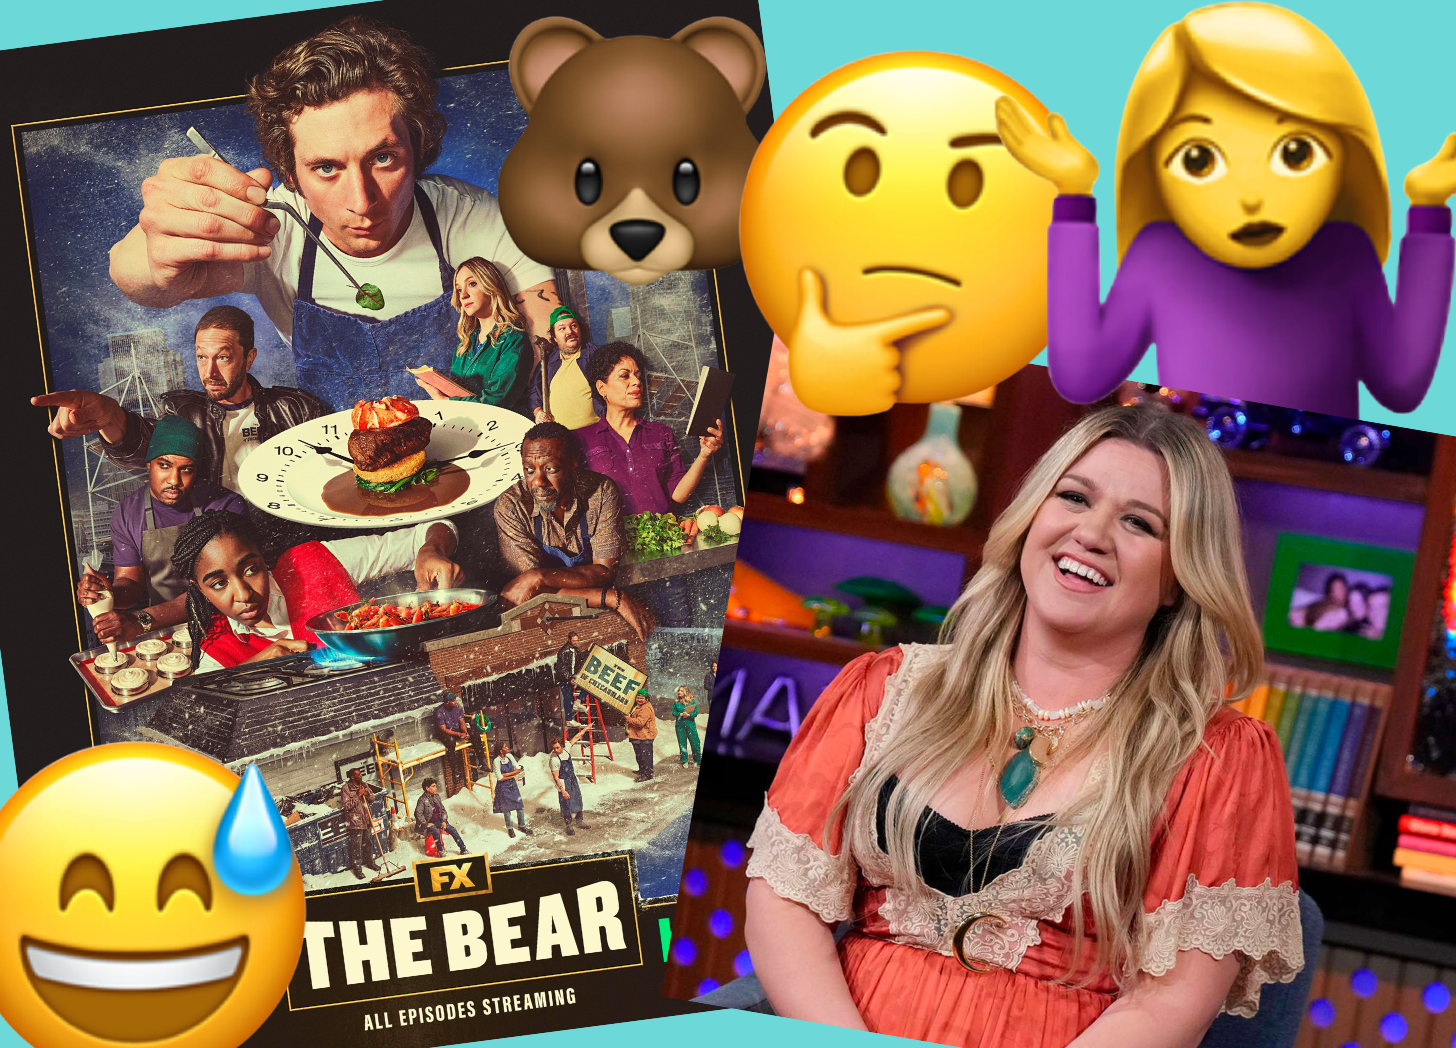 emojis, shrugging lady, kelly clarkson, the bear, a bear emoji, thinking emoji